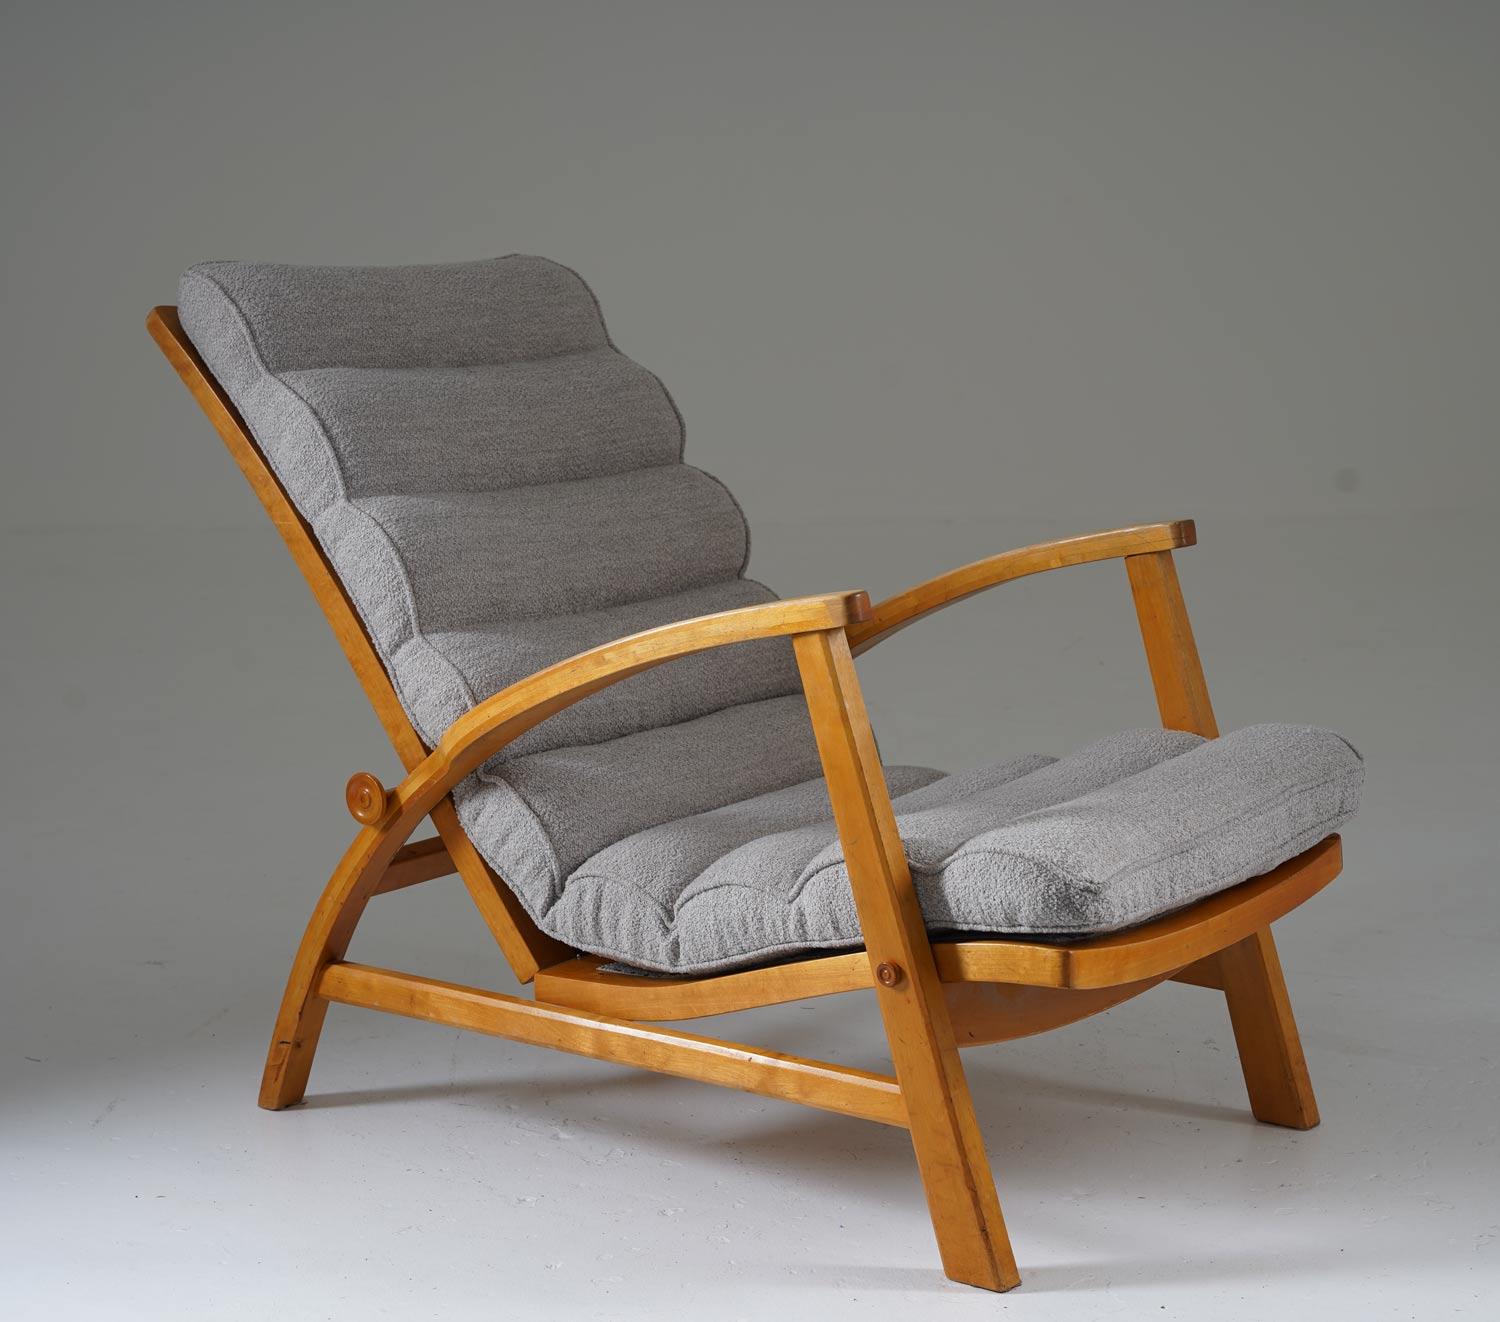 Chaise longue moderniste précoce, modèle 